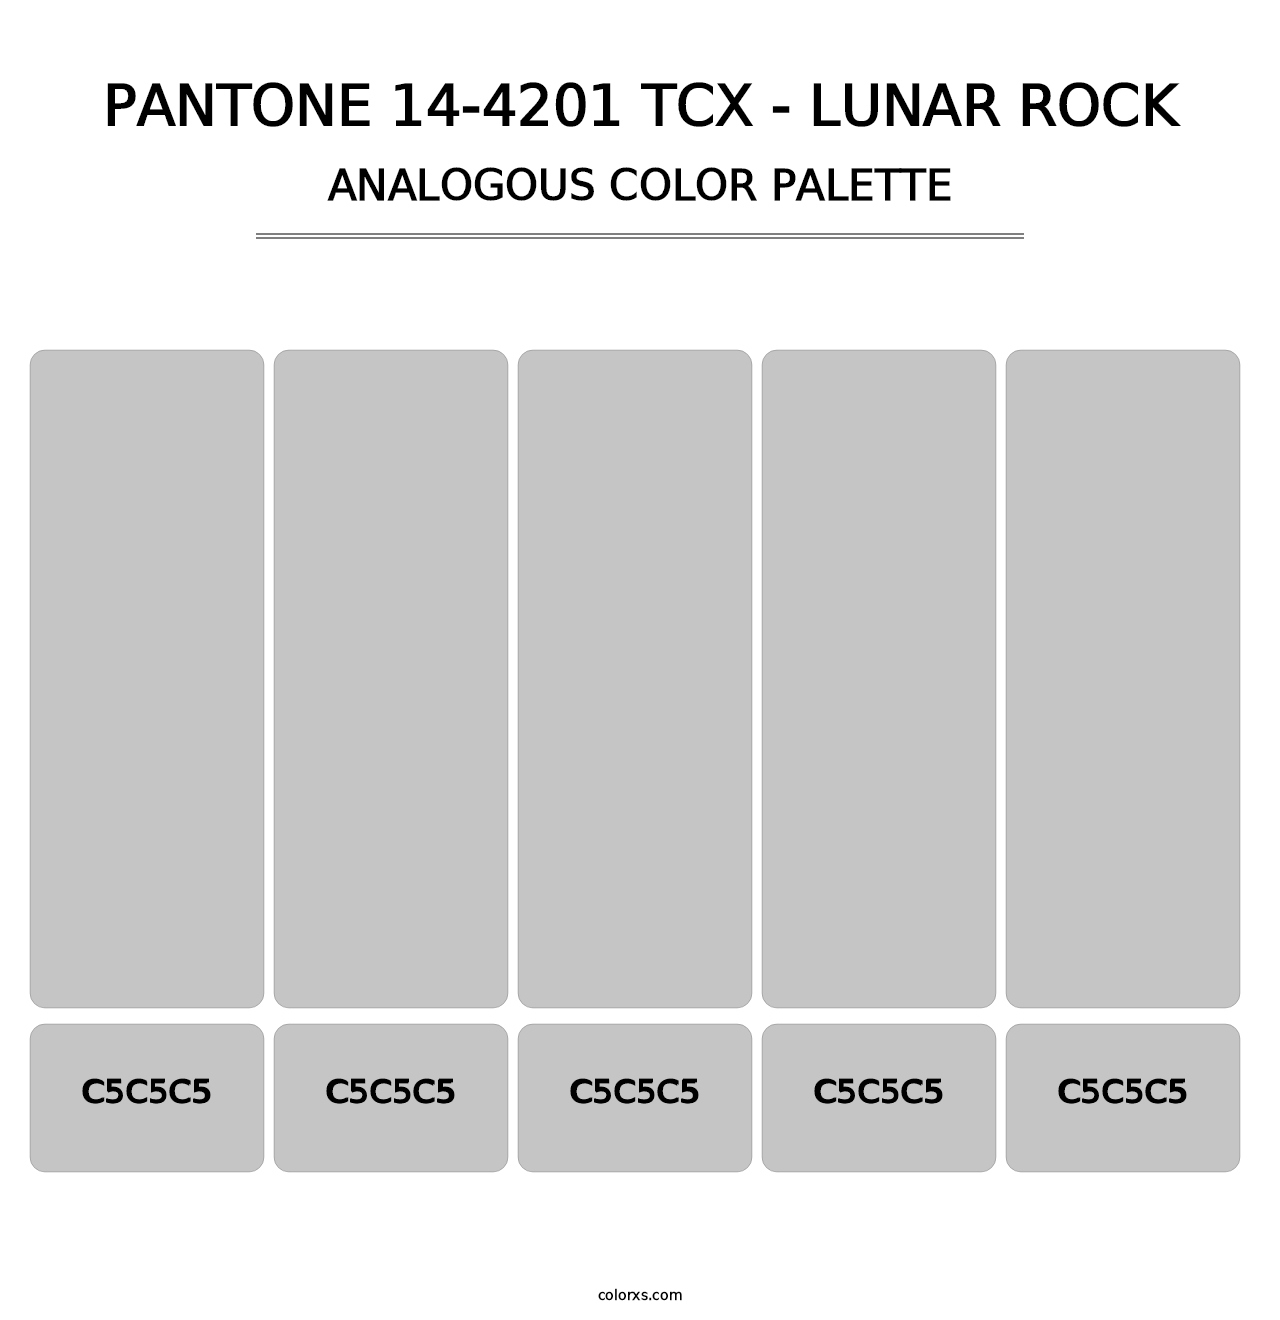 PANTONE 14-4201 TCX - Lunar Rock - Analogous Color Palette